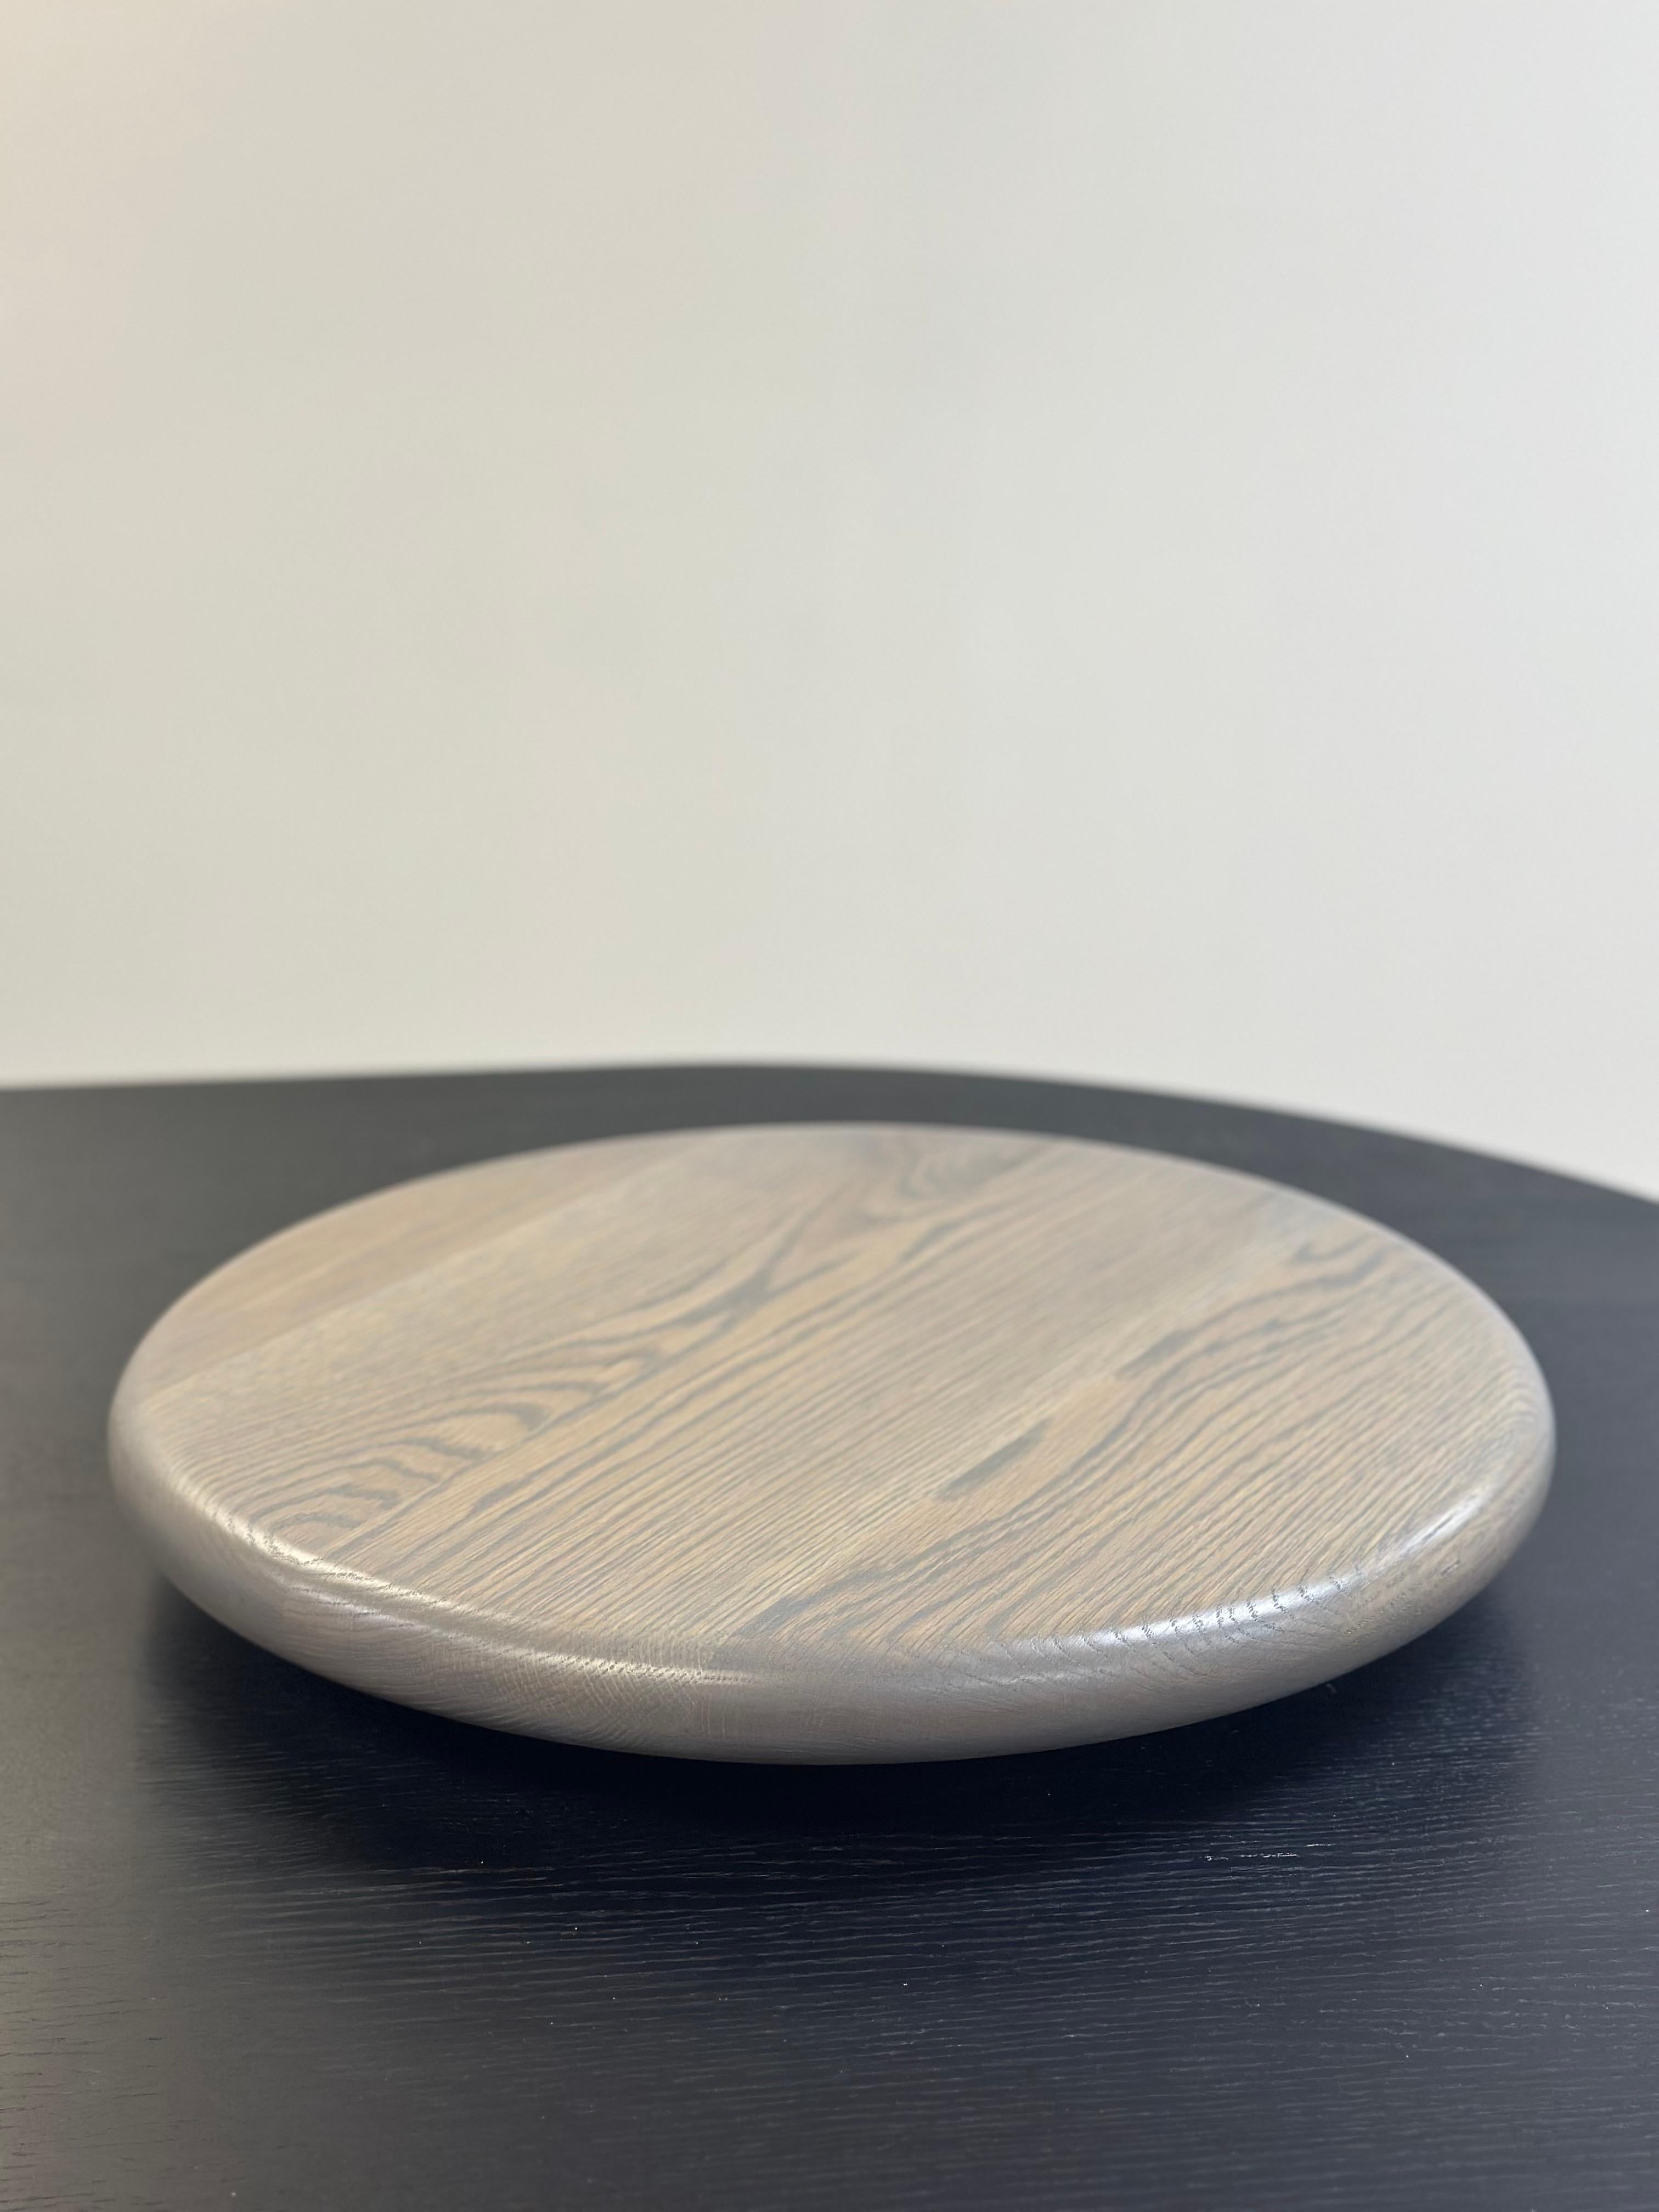 Conçue pour être l'accessoire fonctionnel rond parfait pour toute table, notre Lazy Susan est disponible en bois massif ou avec un plateau en marbre. Dimensions standardisées 19 